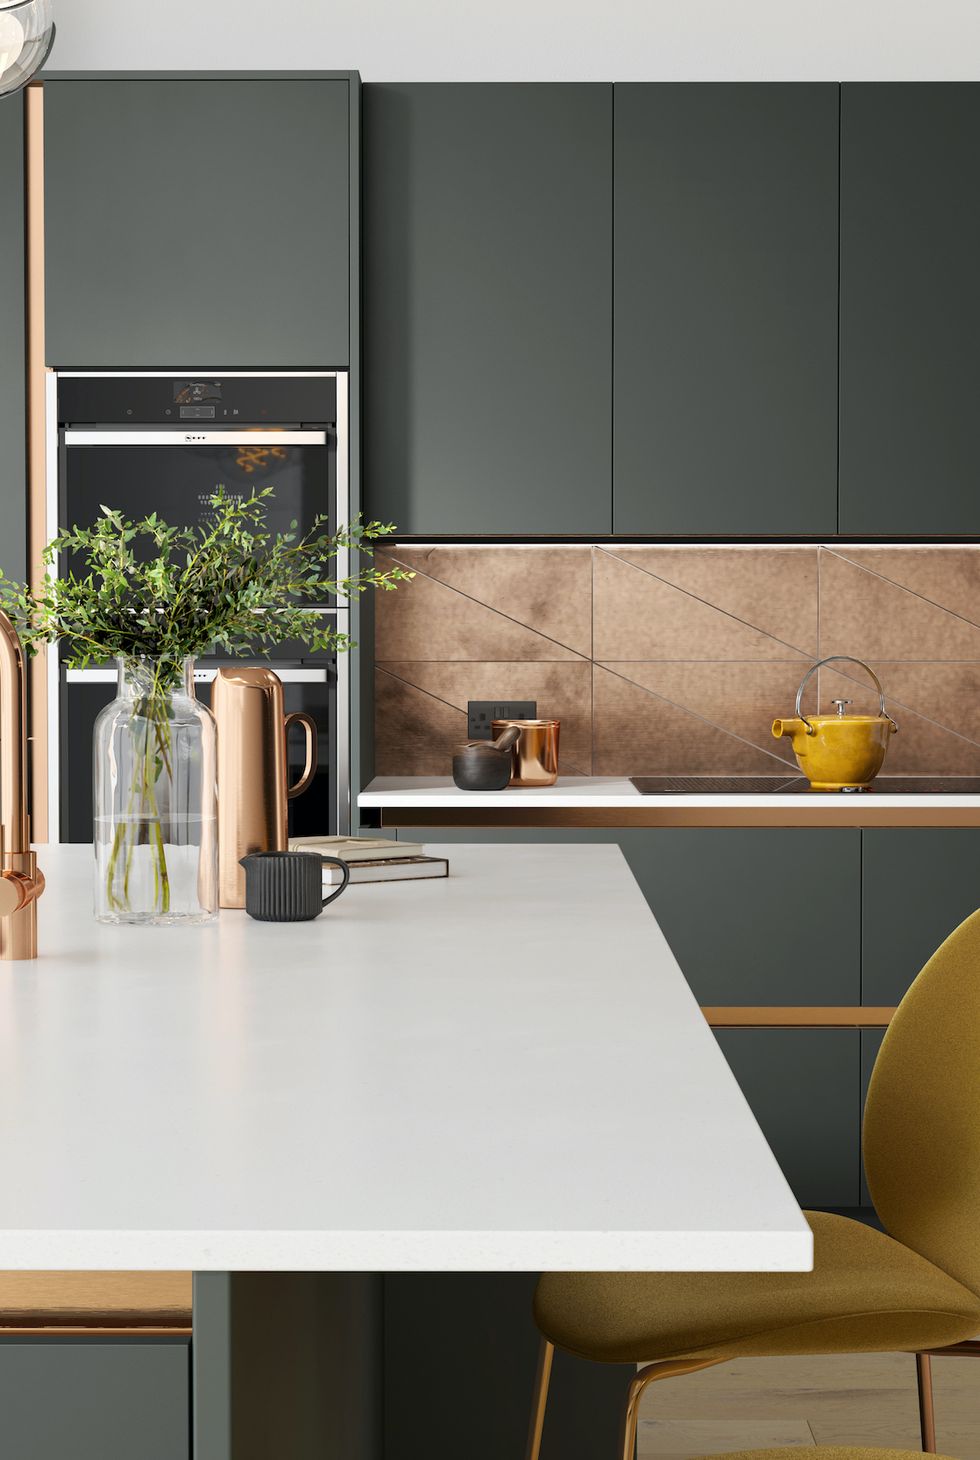 Stylish modern kitchen background. Environmentally friendly items